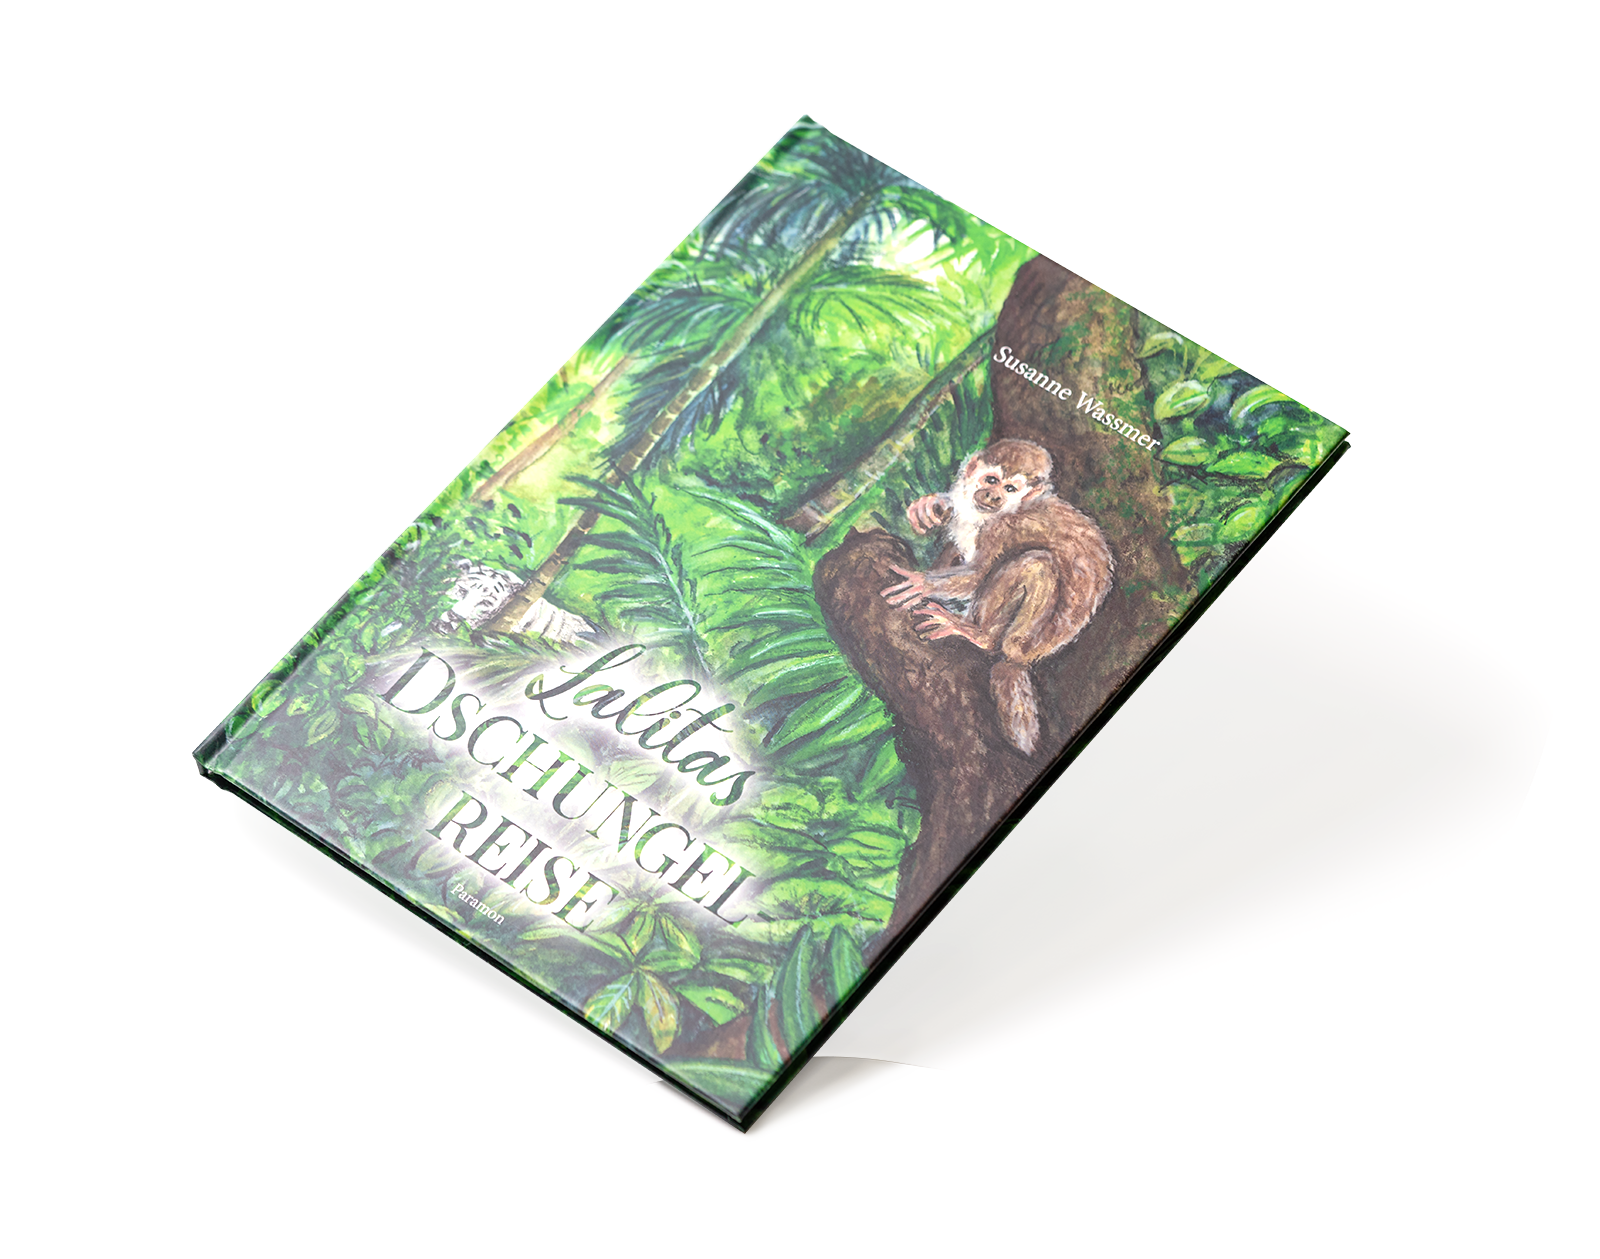 Bild von dem Buch Lalitas Dschungel Reise